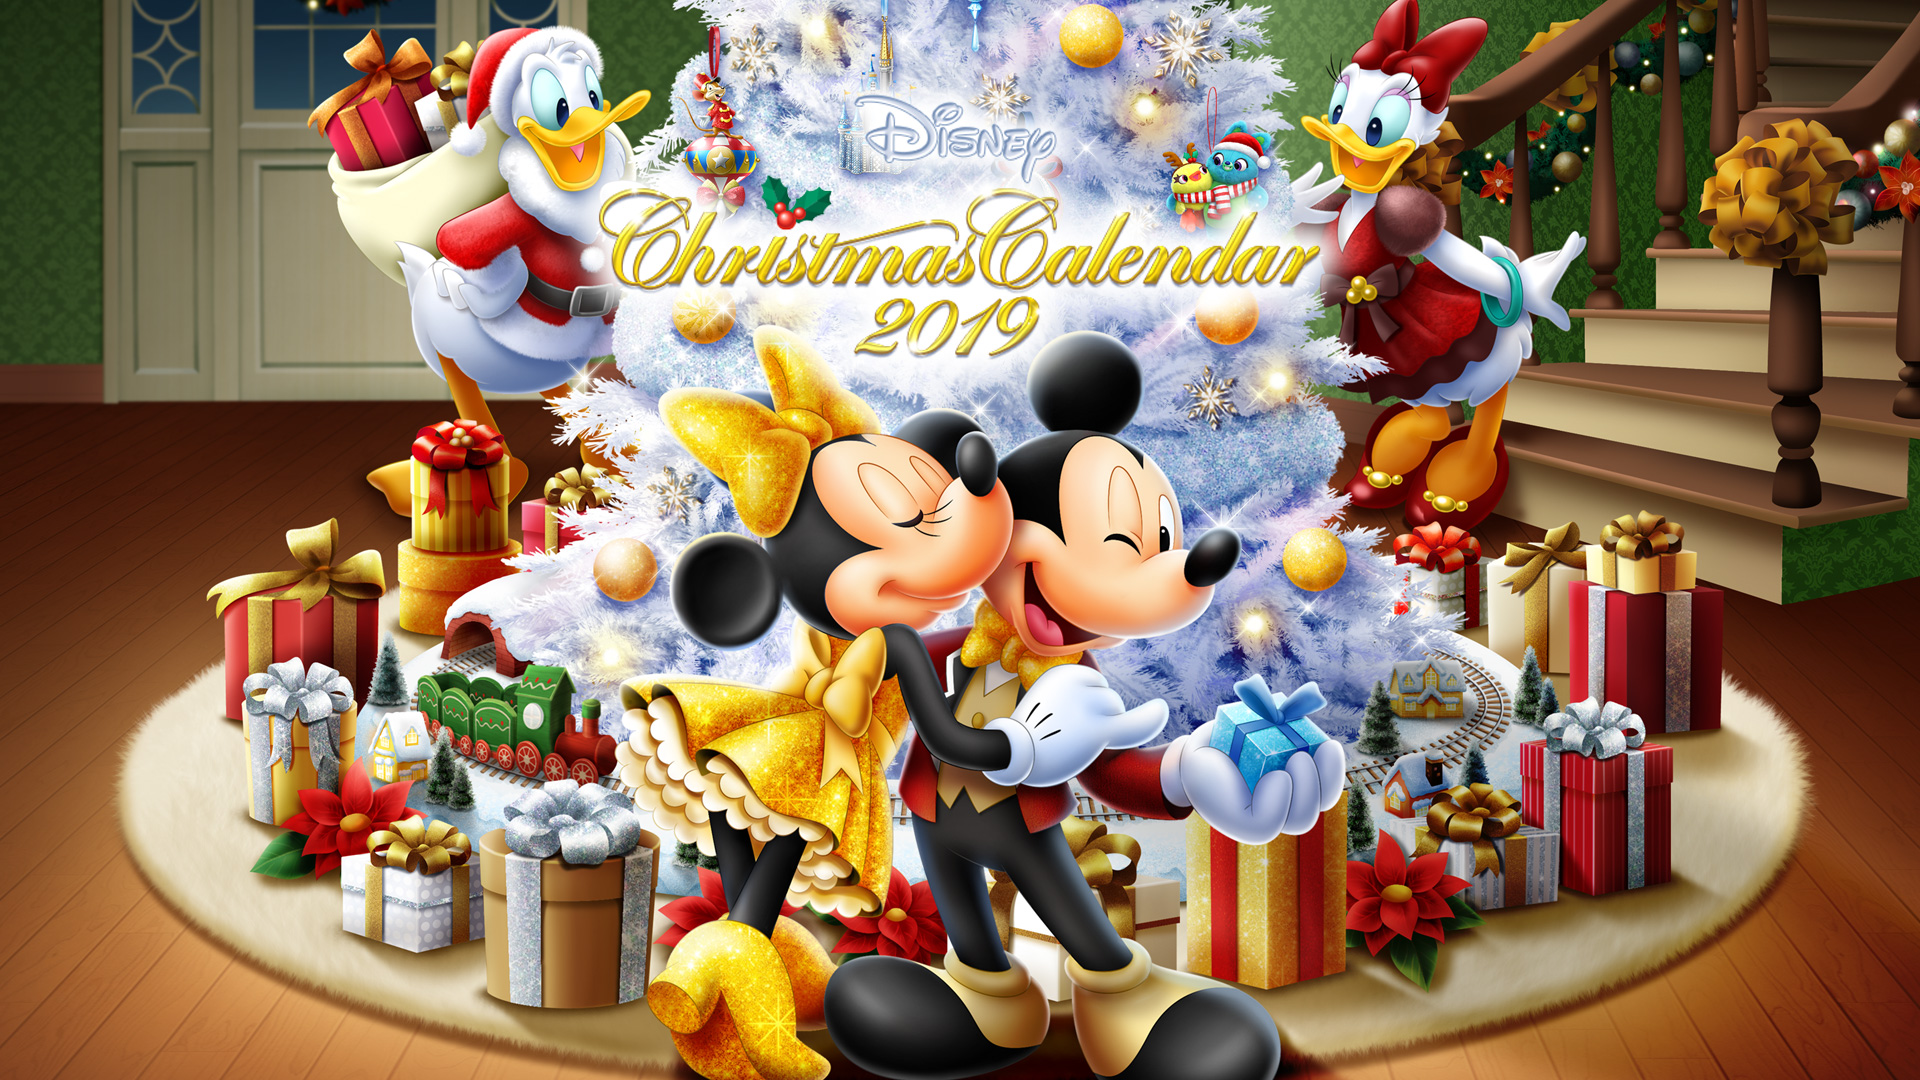 ミッキー ミニーと一緒にオーナメントを集めて クリスマスツリーに飾ろう ディズニーデラックス が贈る オンラインクリスマスイベント Christmas Calendar 2019 ウォルト ディズニー ジャパン株式会社のプレスリリース